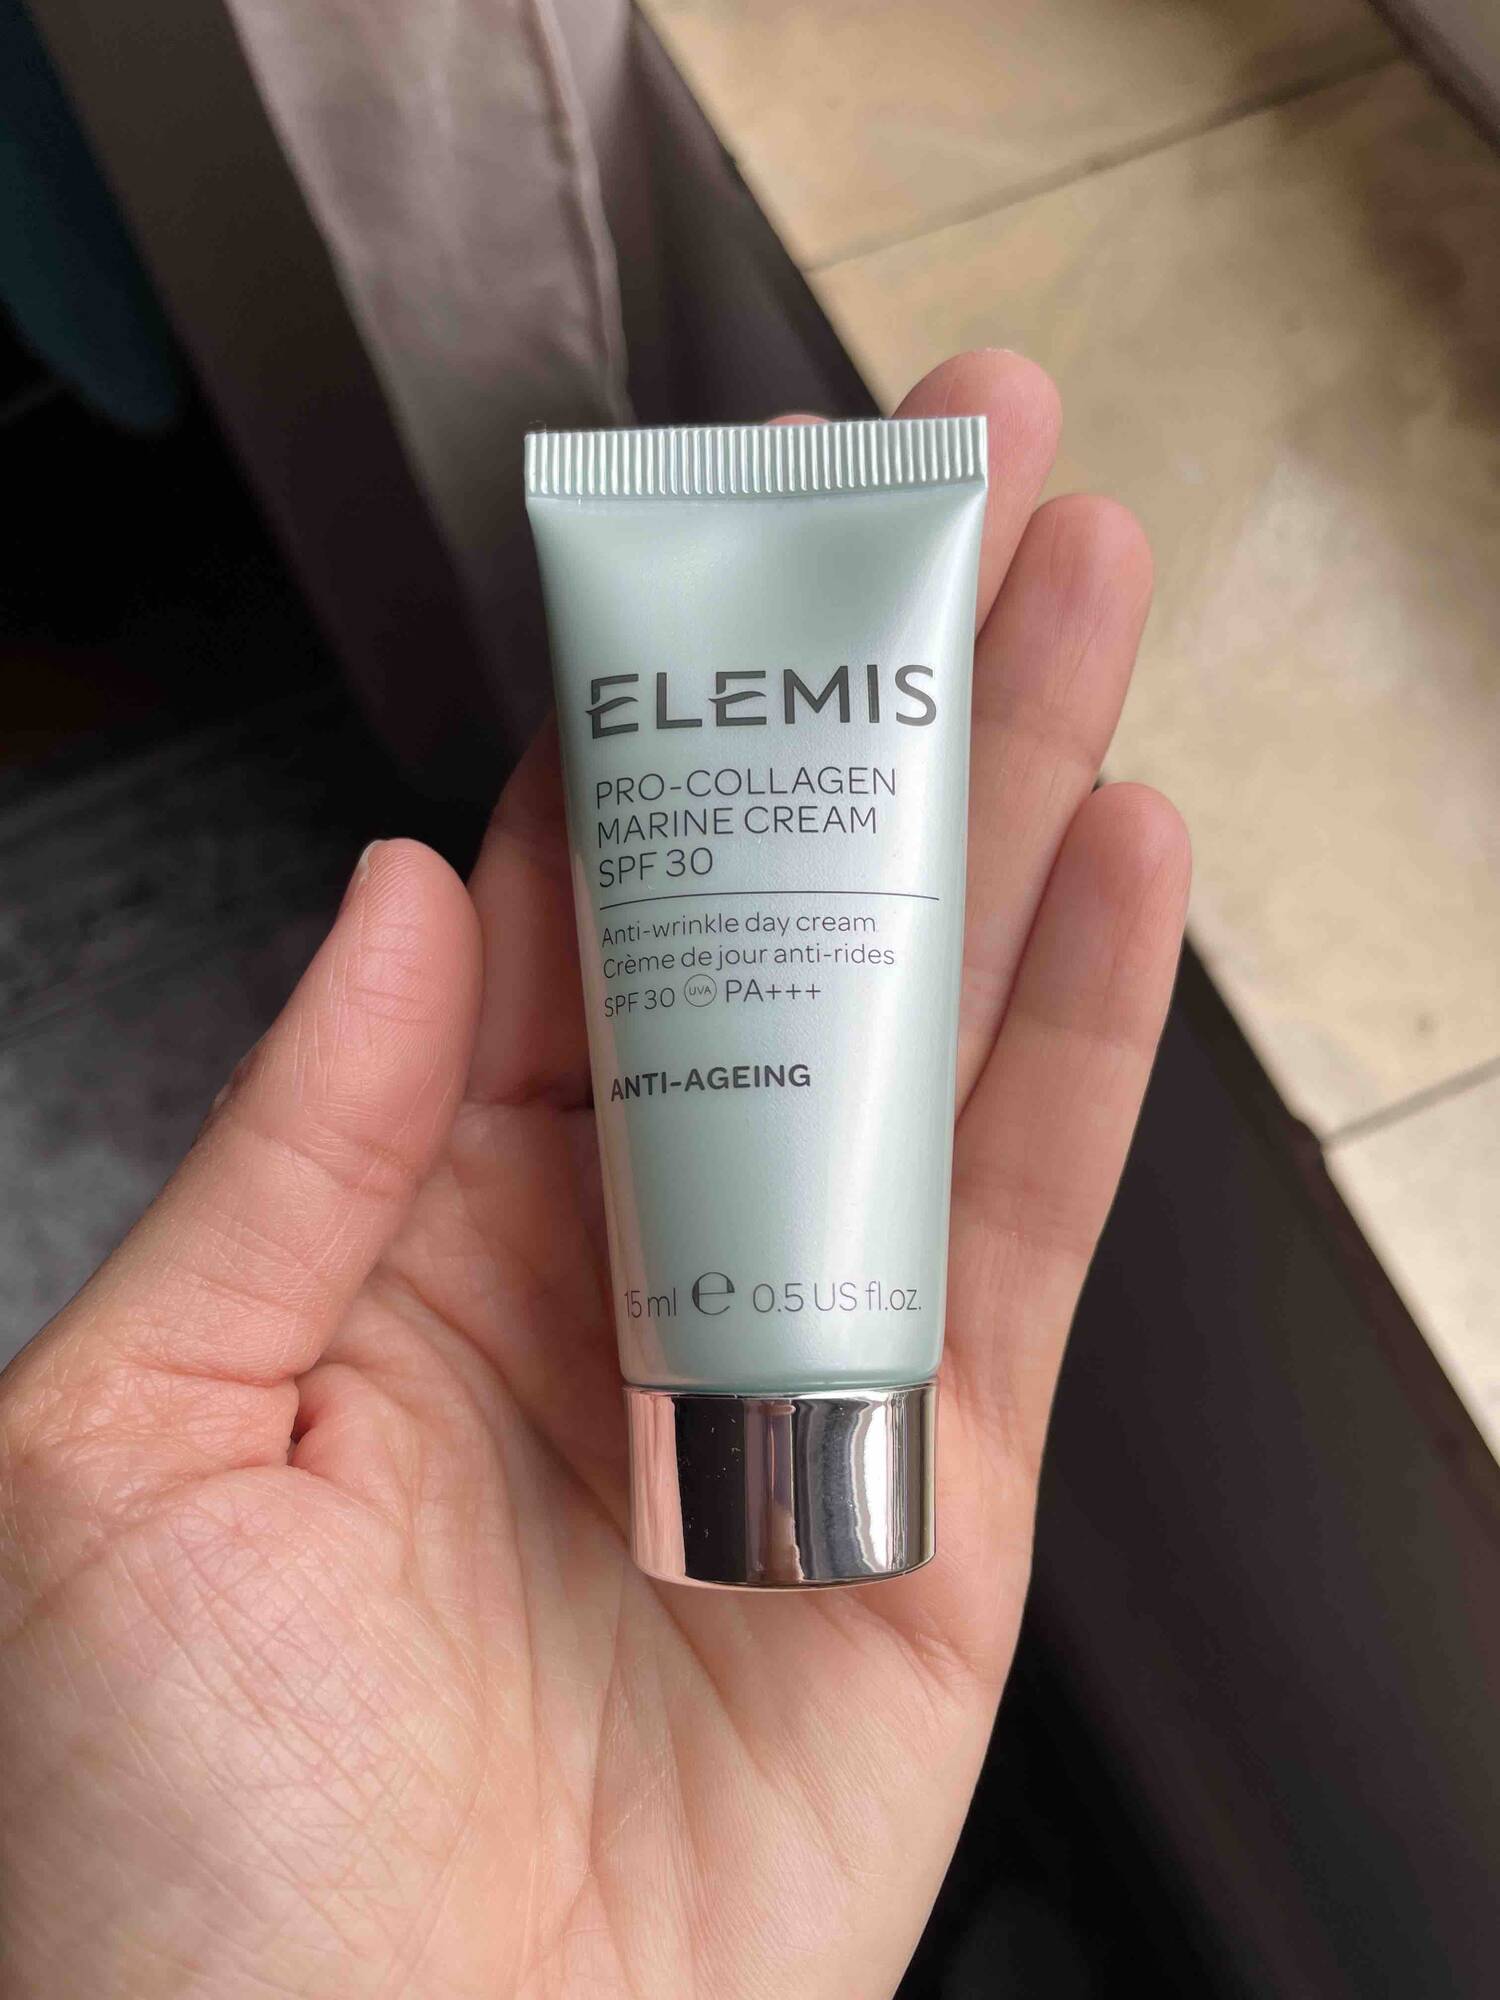 ELEMIS - Pro-collagen marine Cream SPF 30 - Anti-ageing